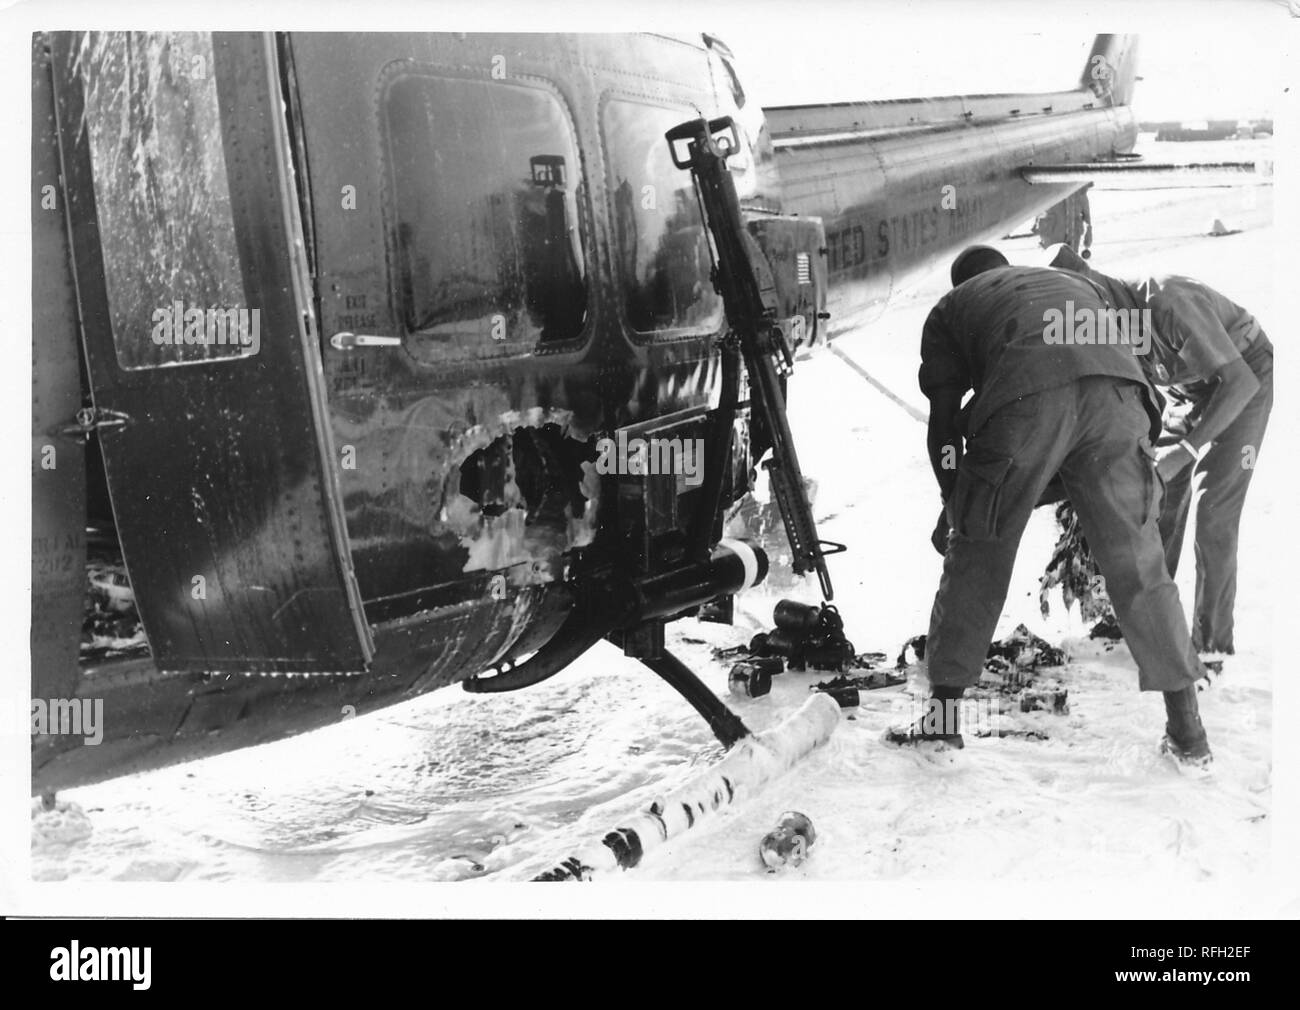 Photographie noir et blanc, montrant deux hommes en uniformes militaires, se penchant pour l'enquête de dommage subi par un Bell UH-1 Huey' ('Iroquois) hélicoptère, avec une substance de couleur claire (peut-être le sable, la neige ou mousse) visible sur le terrain, photographié lors de la guerre du Vietnam, 1968. () Banque D'Images